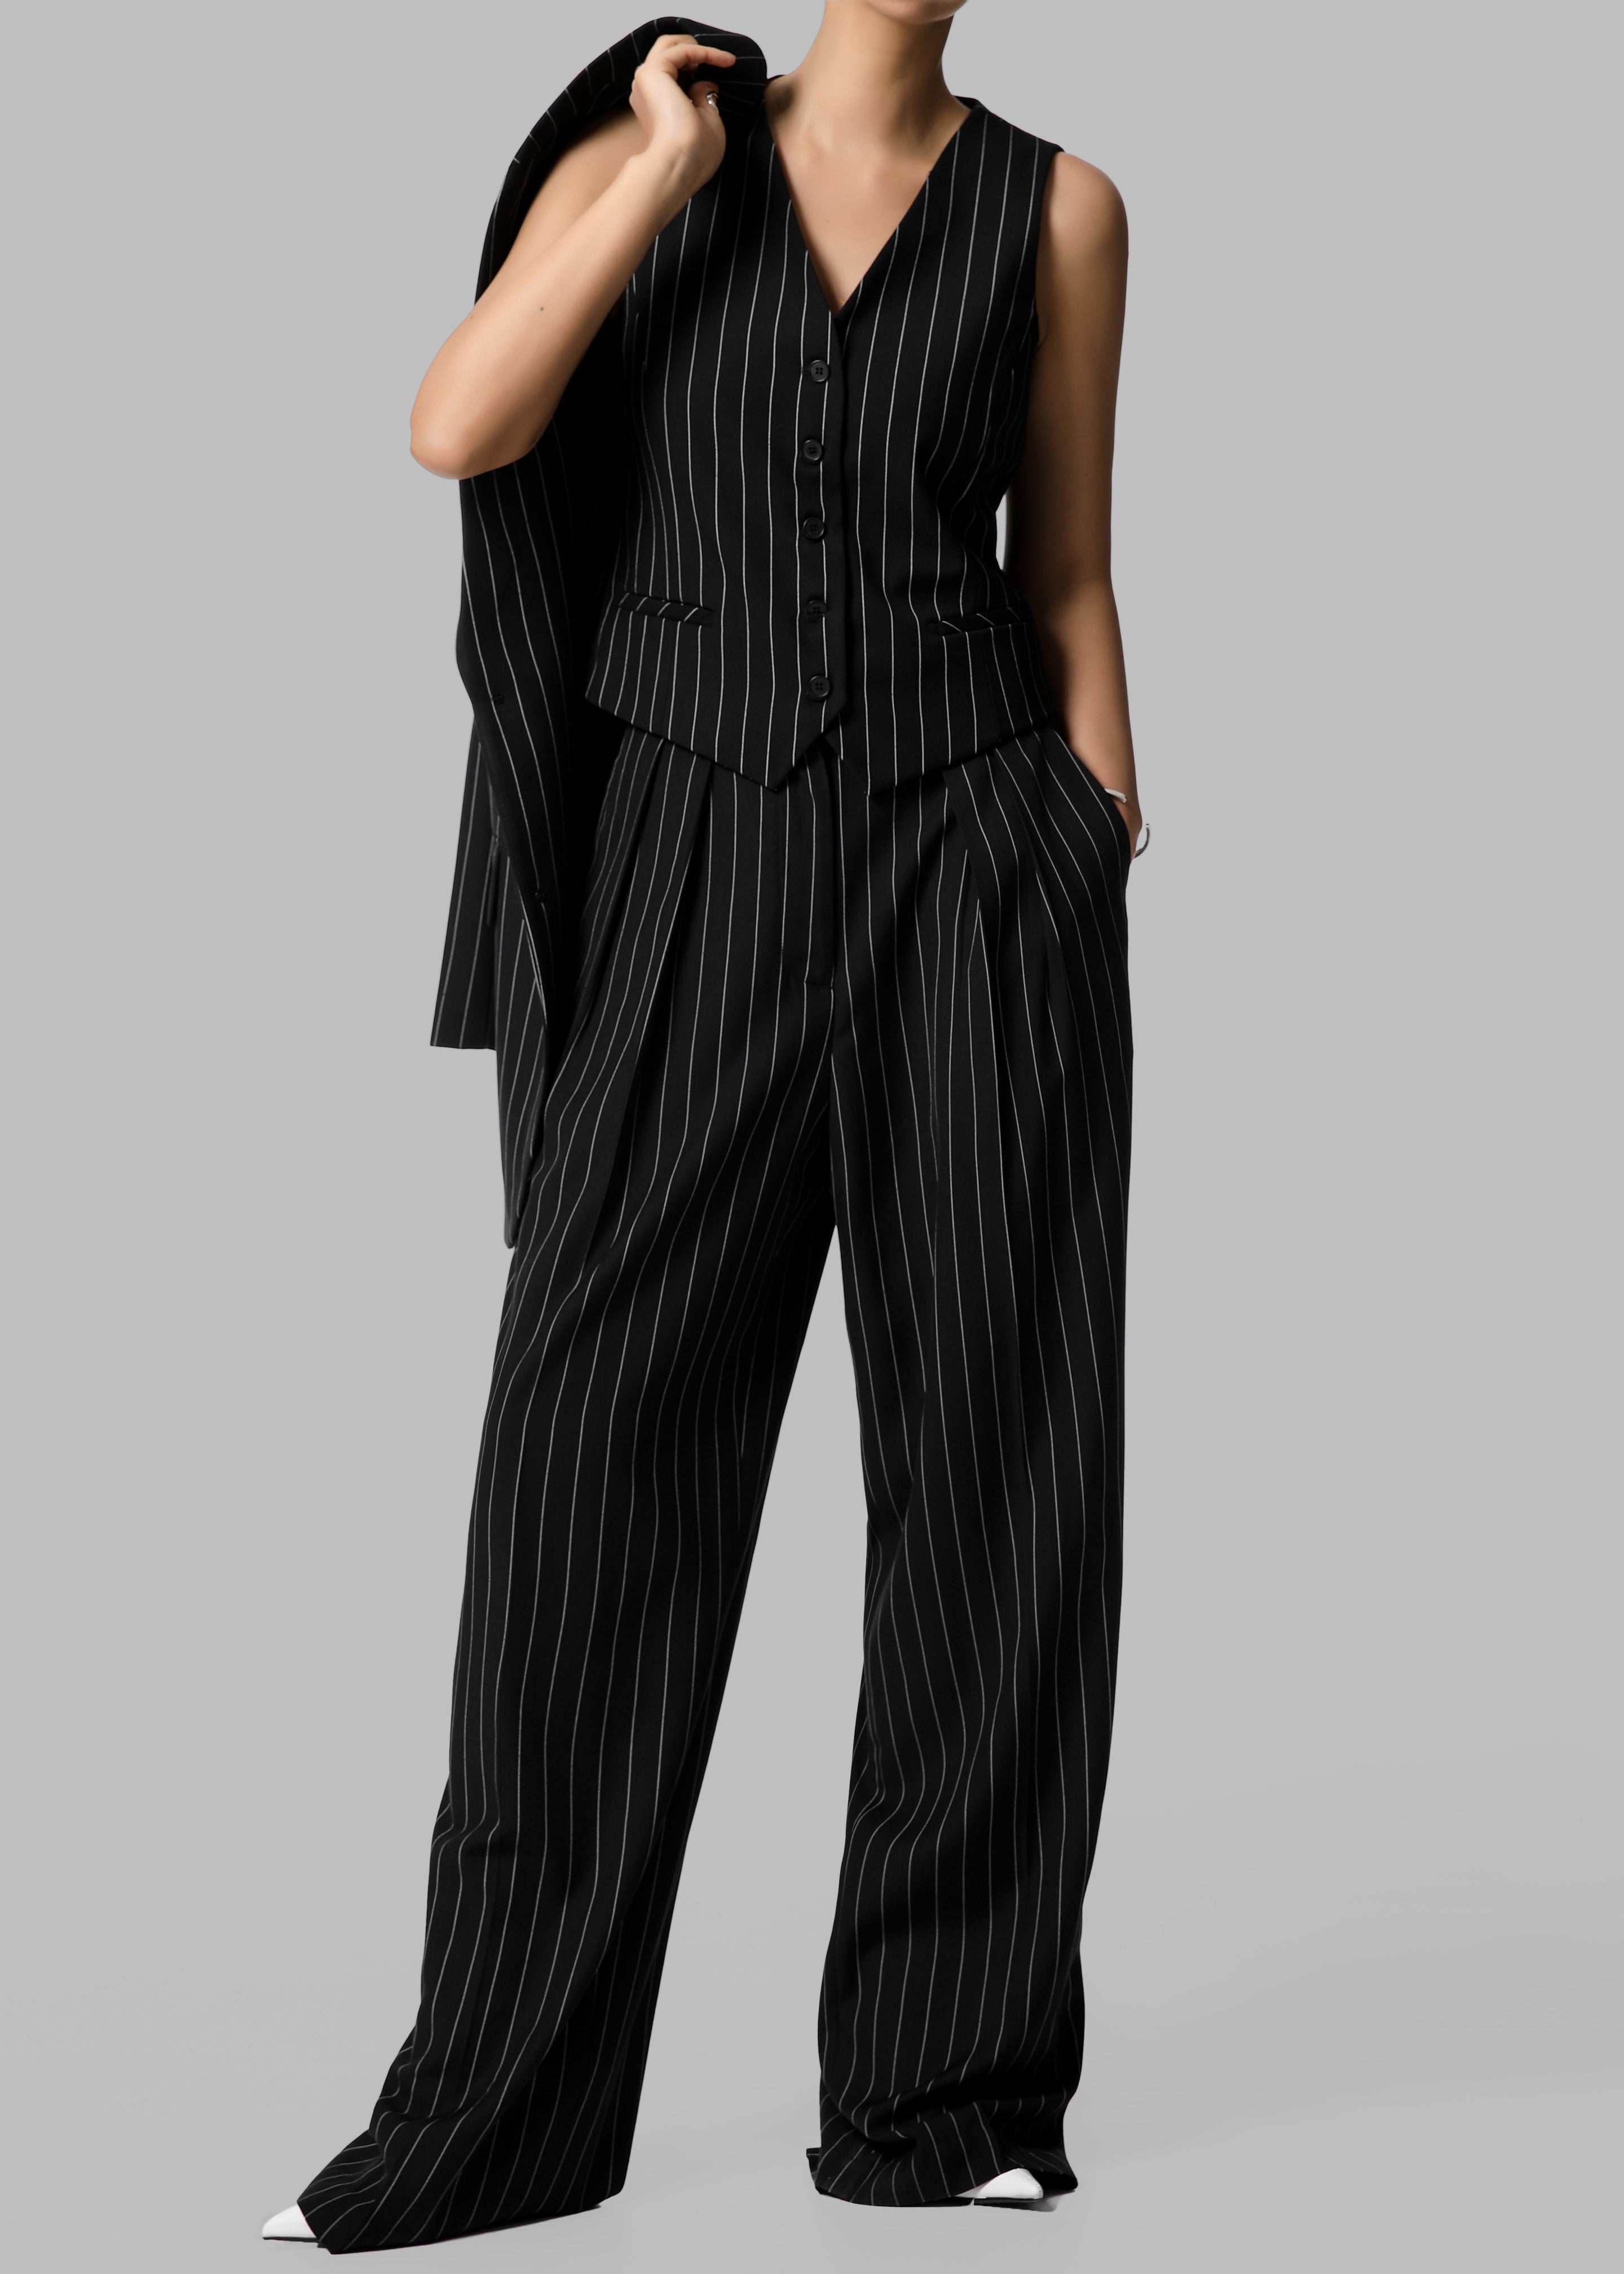 Holland Suit Vest - Black/White Pinstripe - 5